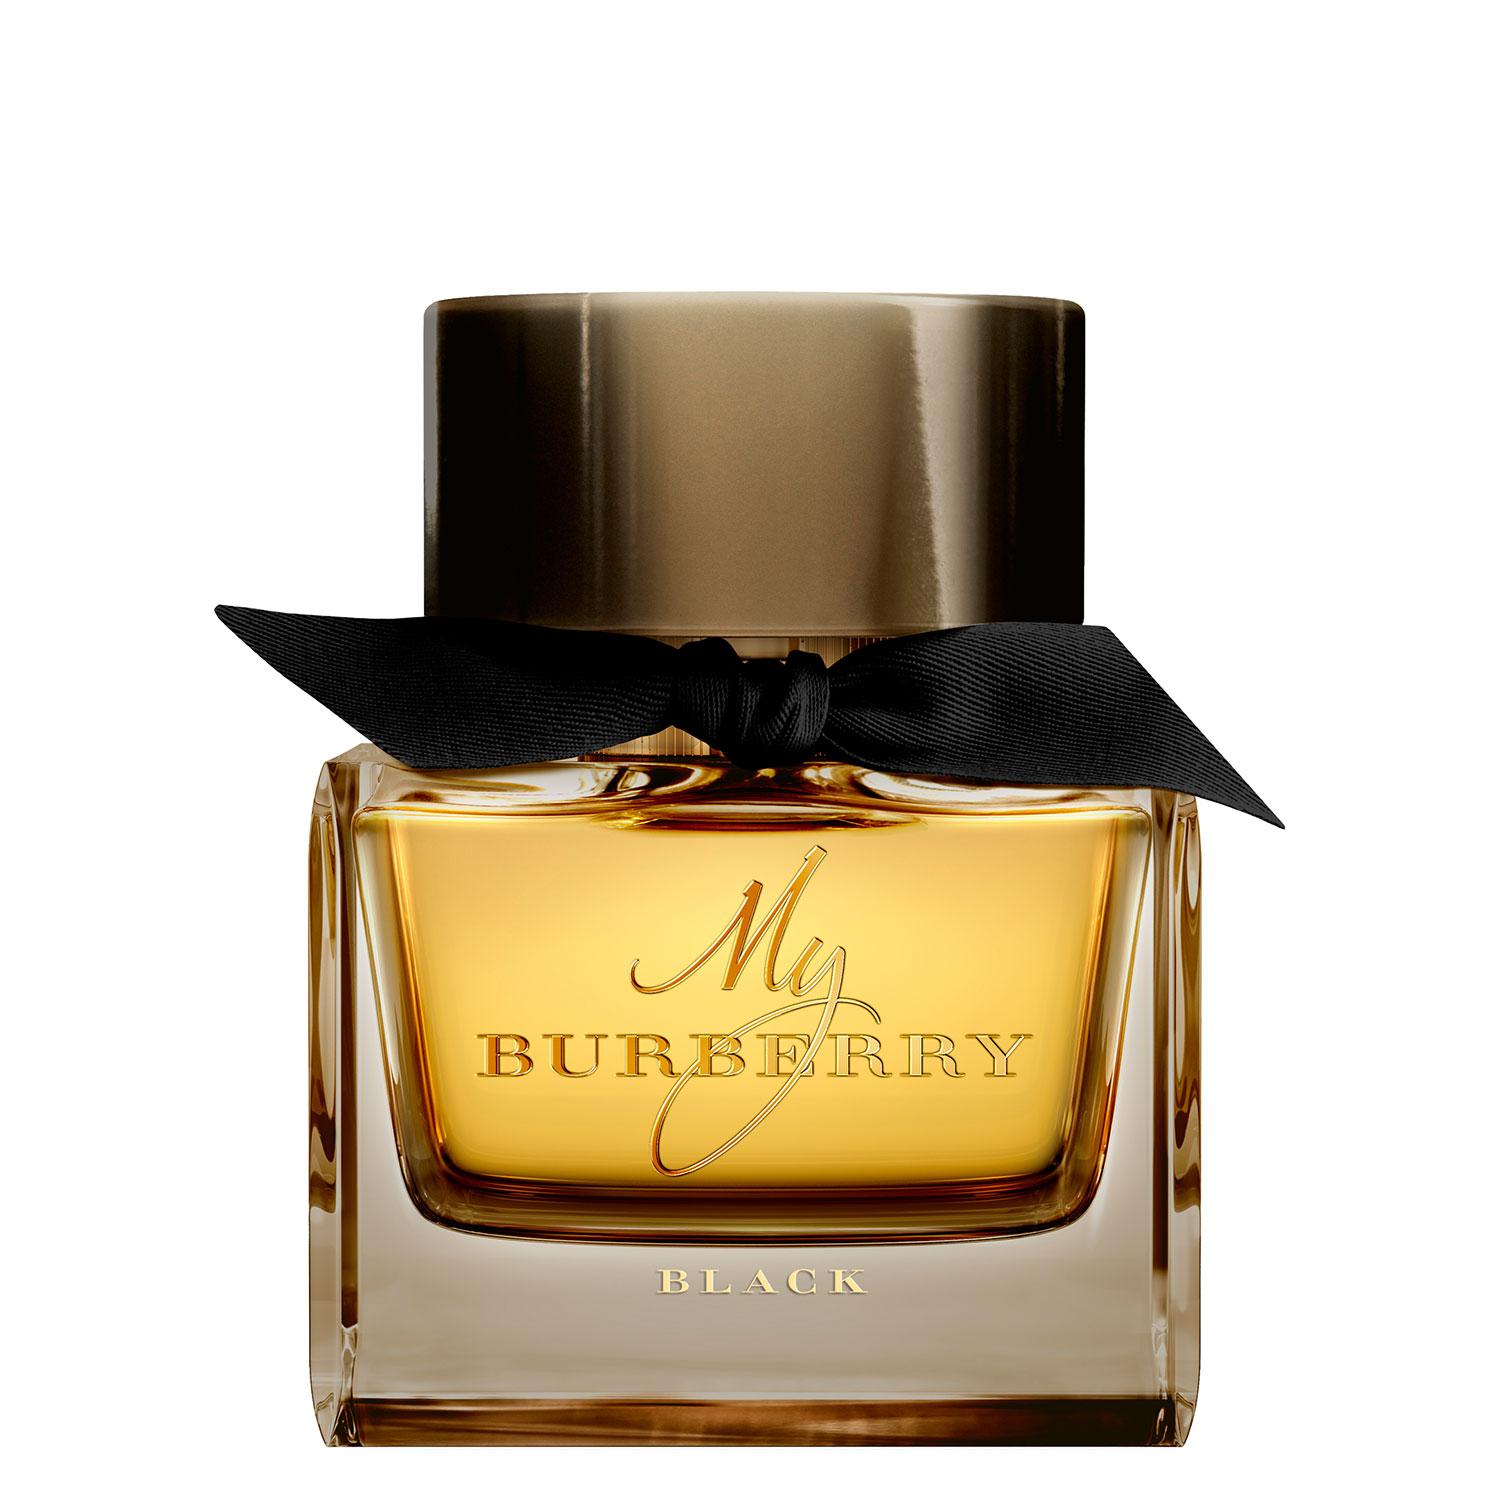 My Burberry - Black Eau de Parfum